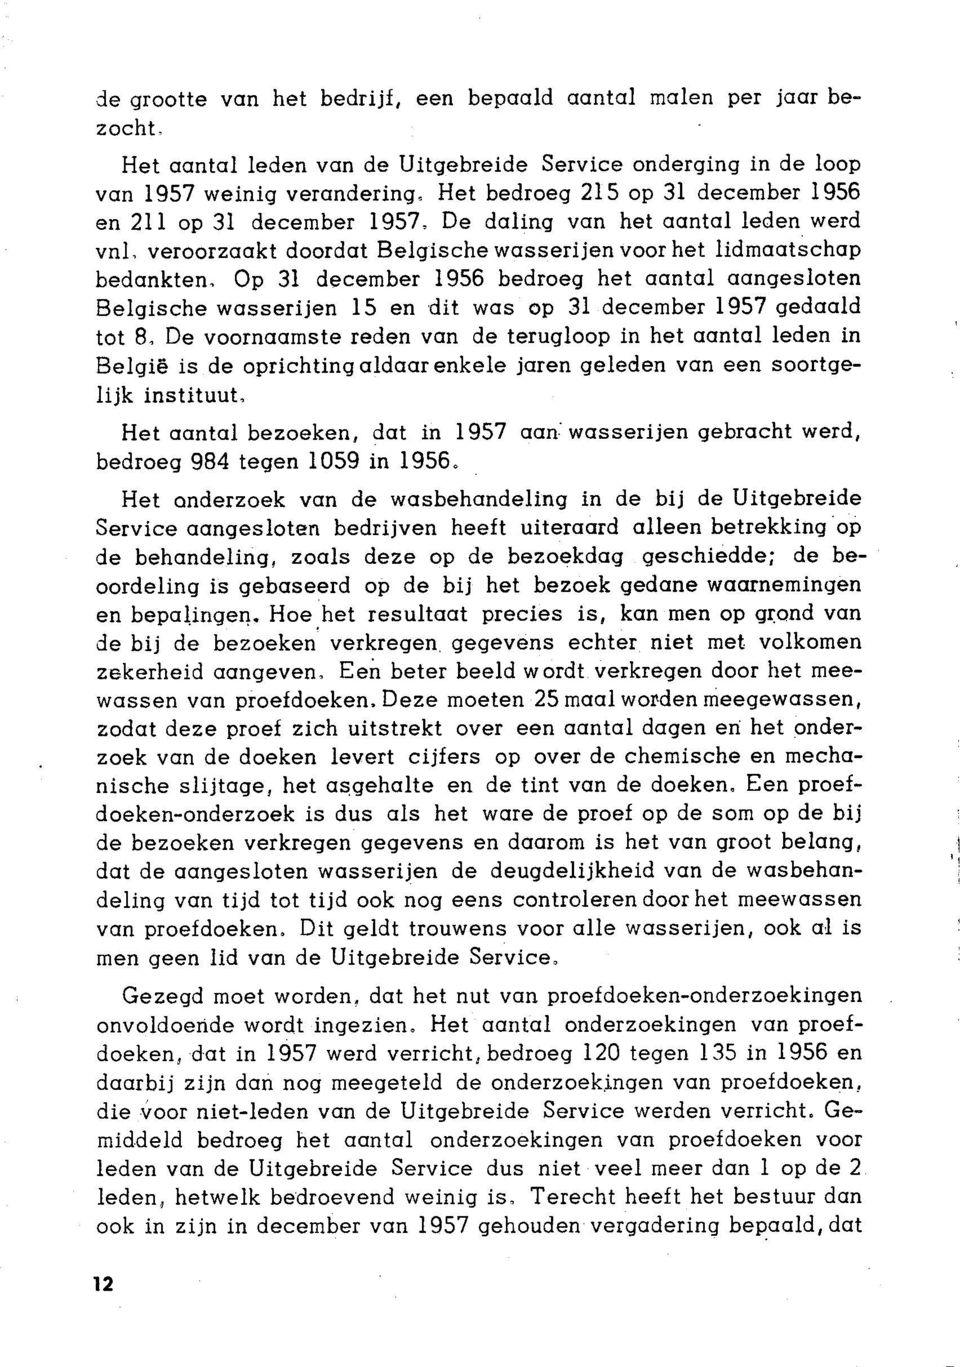 Op 3l december 1956 bedroeg het qqntql oongesloten Belqische wosserijen 15 en dit wqs op 31 december 1957 gedqqld tot B, De voornqqmste reden vqn de terugloop in het qqntql leden in Belqië is de